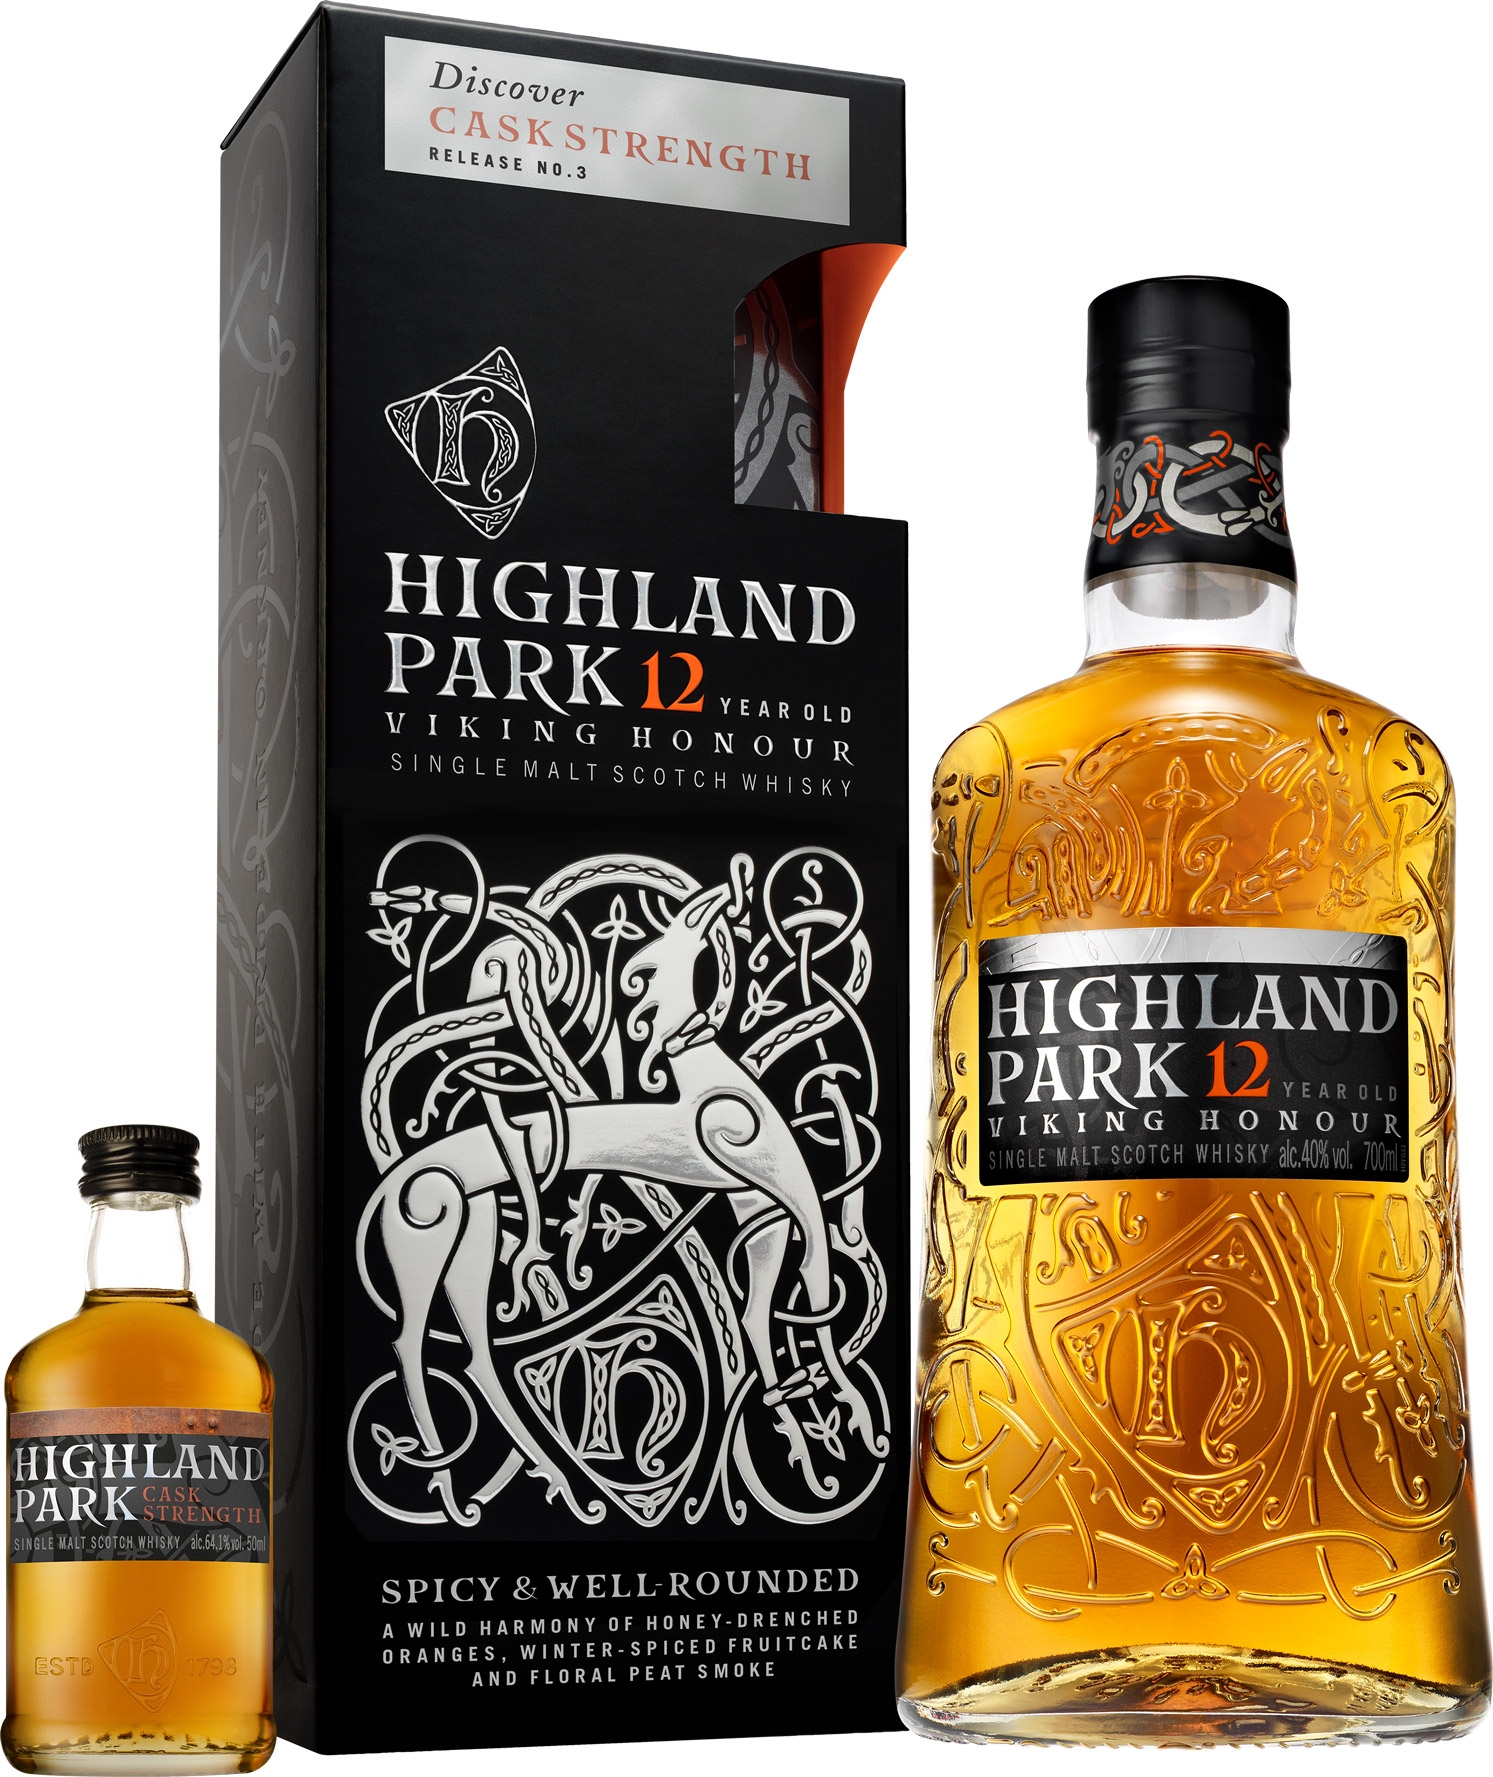 Highland Park 12 år Viking Honour Single Malt Whisky 40% + 5cl. Cask  Strength 3 Sample